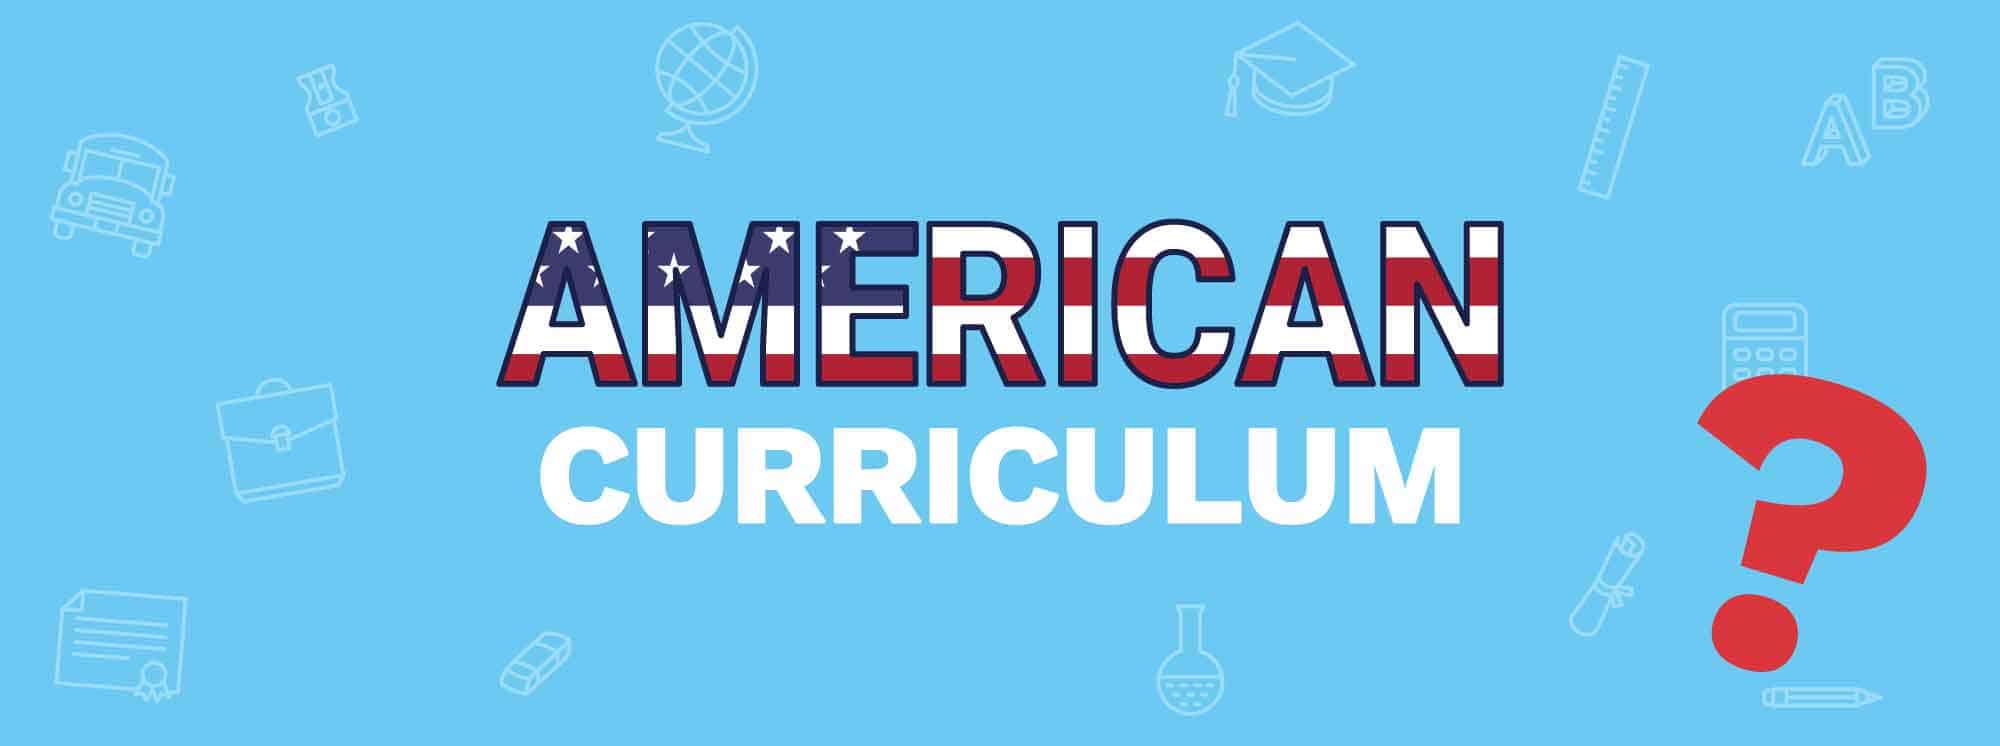 Curriculum americano: Tutto quello che devi sapere